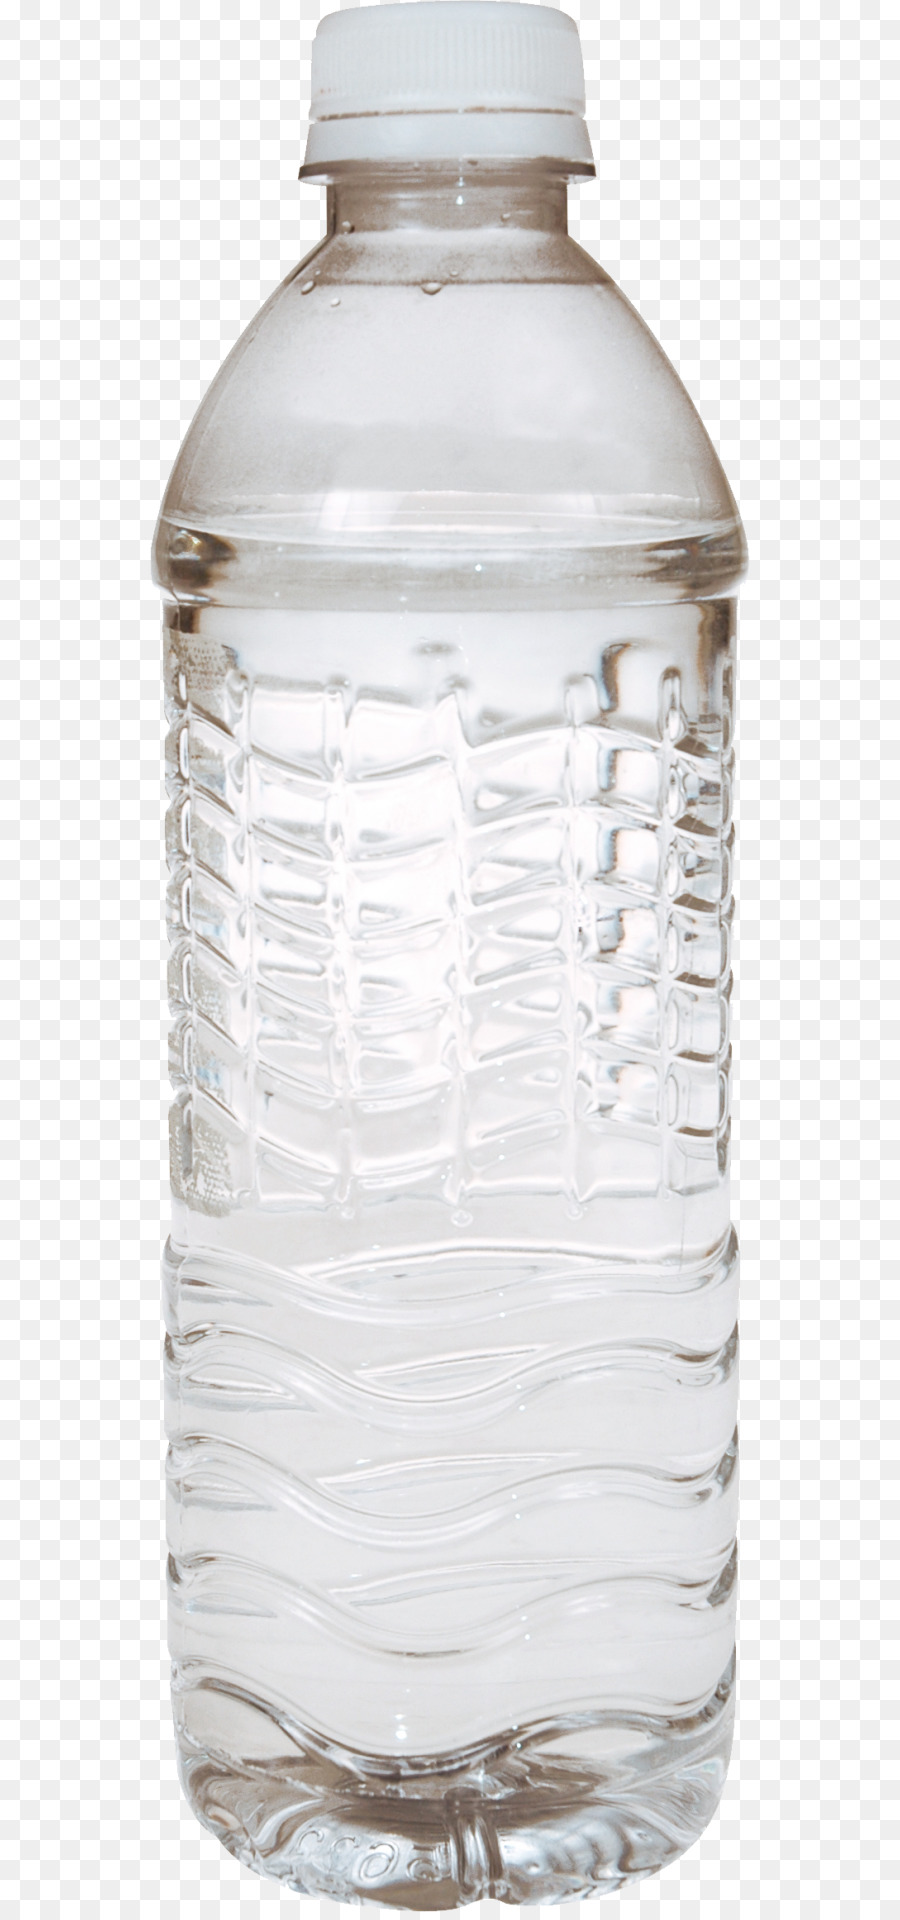 Chai nước chai Nhựa nước đóng Chai - chai nước png nhôm